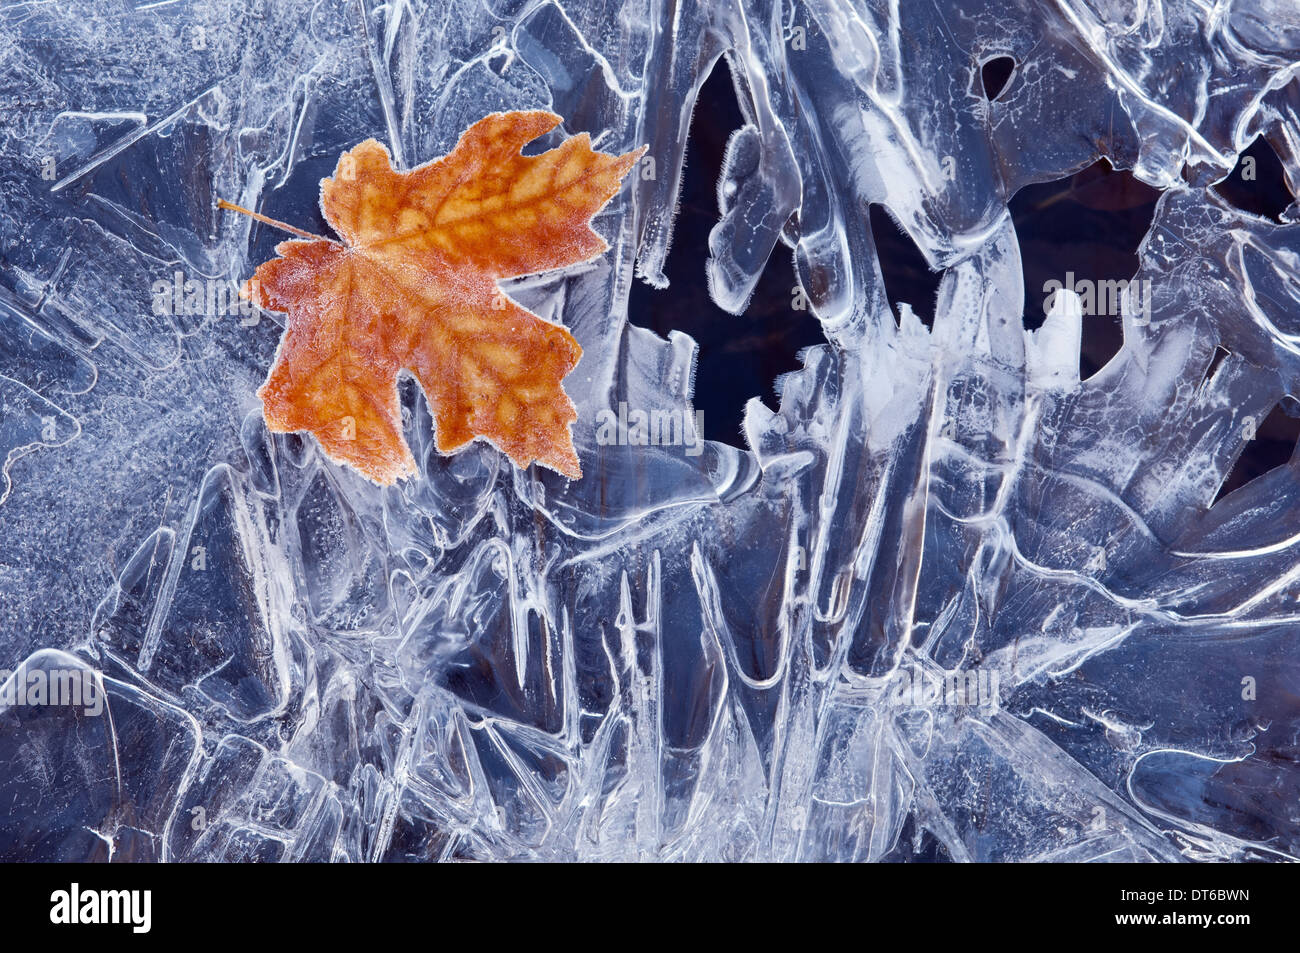 Une feuille d'érable marron, gelé et enneigé, allongé sur une couche de glace, avec des motifs irréguliers de gel et de cristaux de glace. Banque D'Images